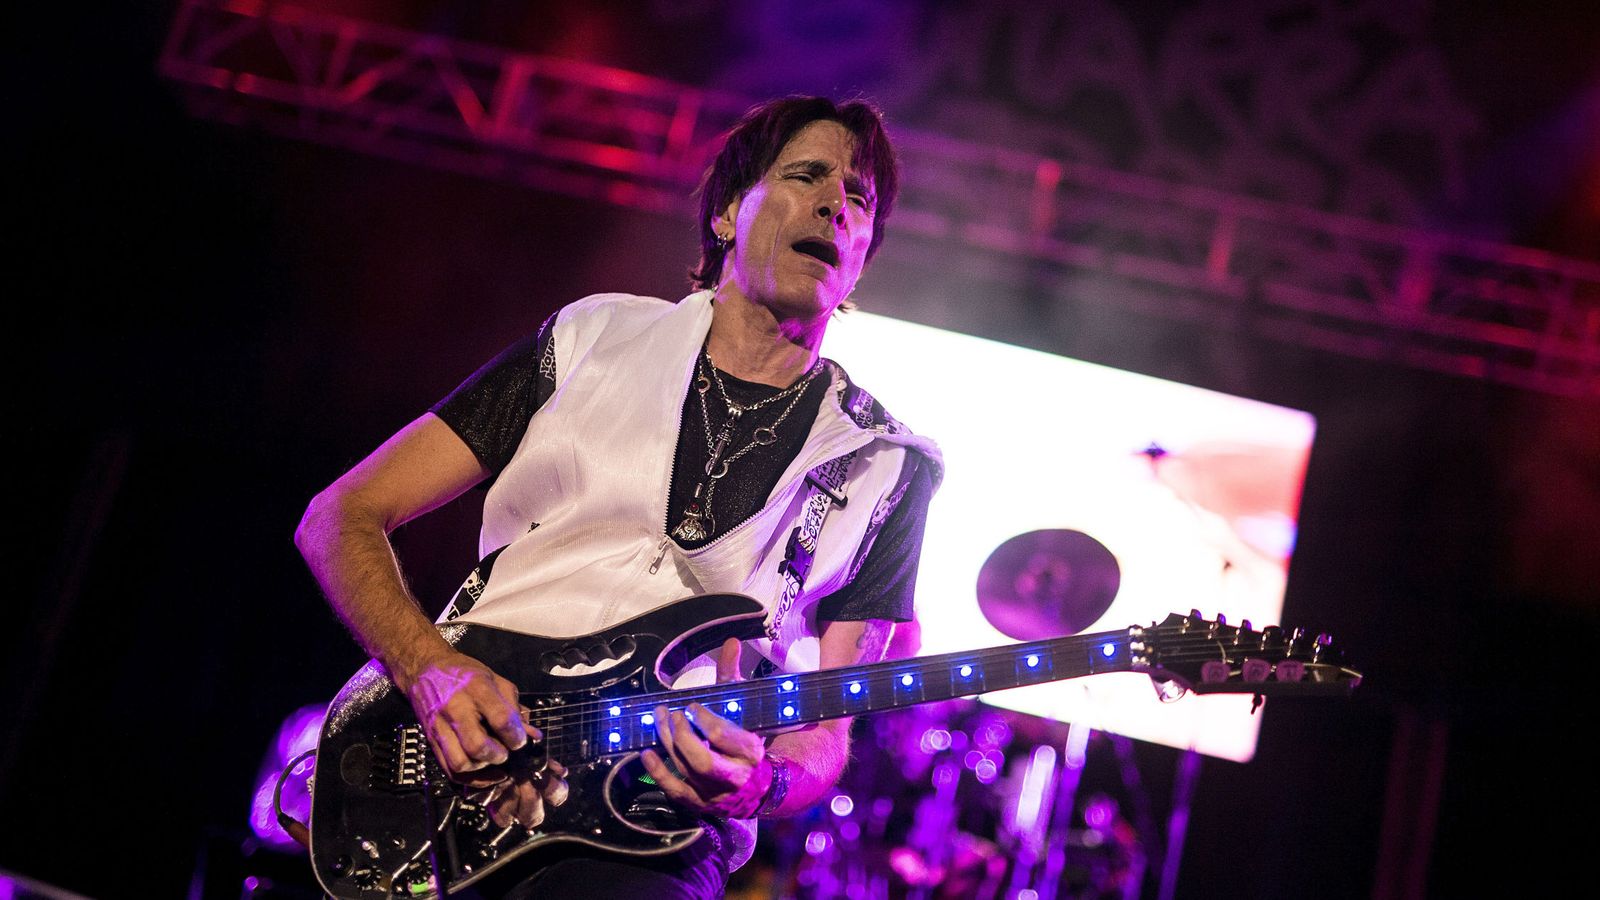 Foto: El guitarrista Steve Vai durante un concierto en España (en este caso en Córdoba).